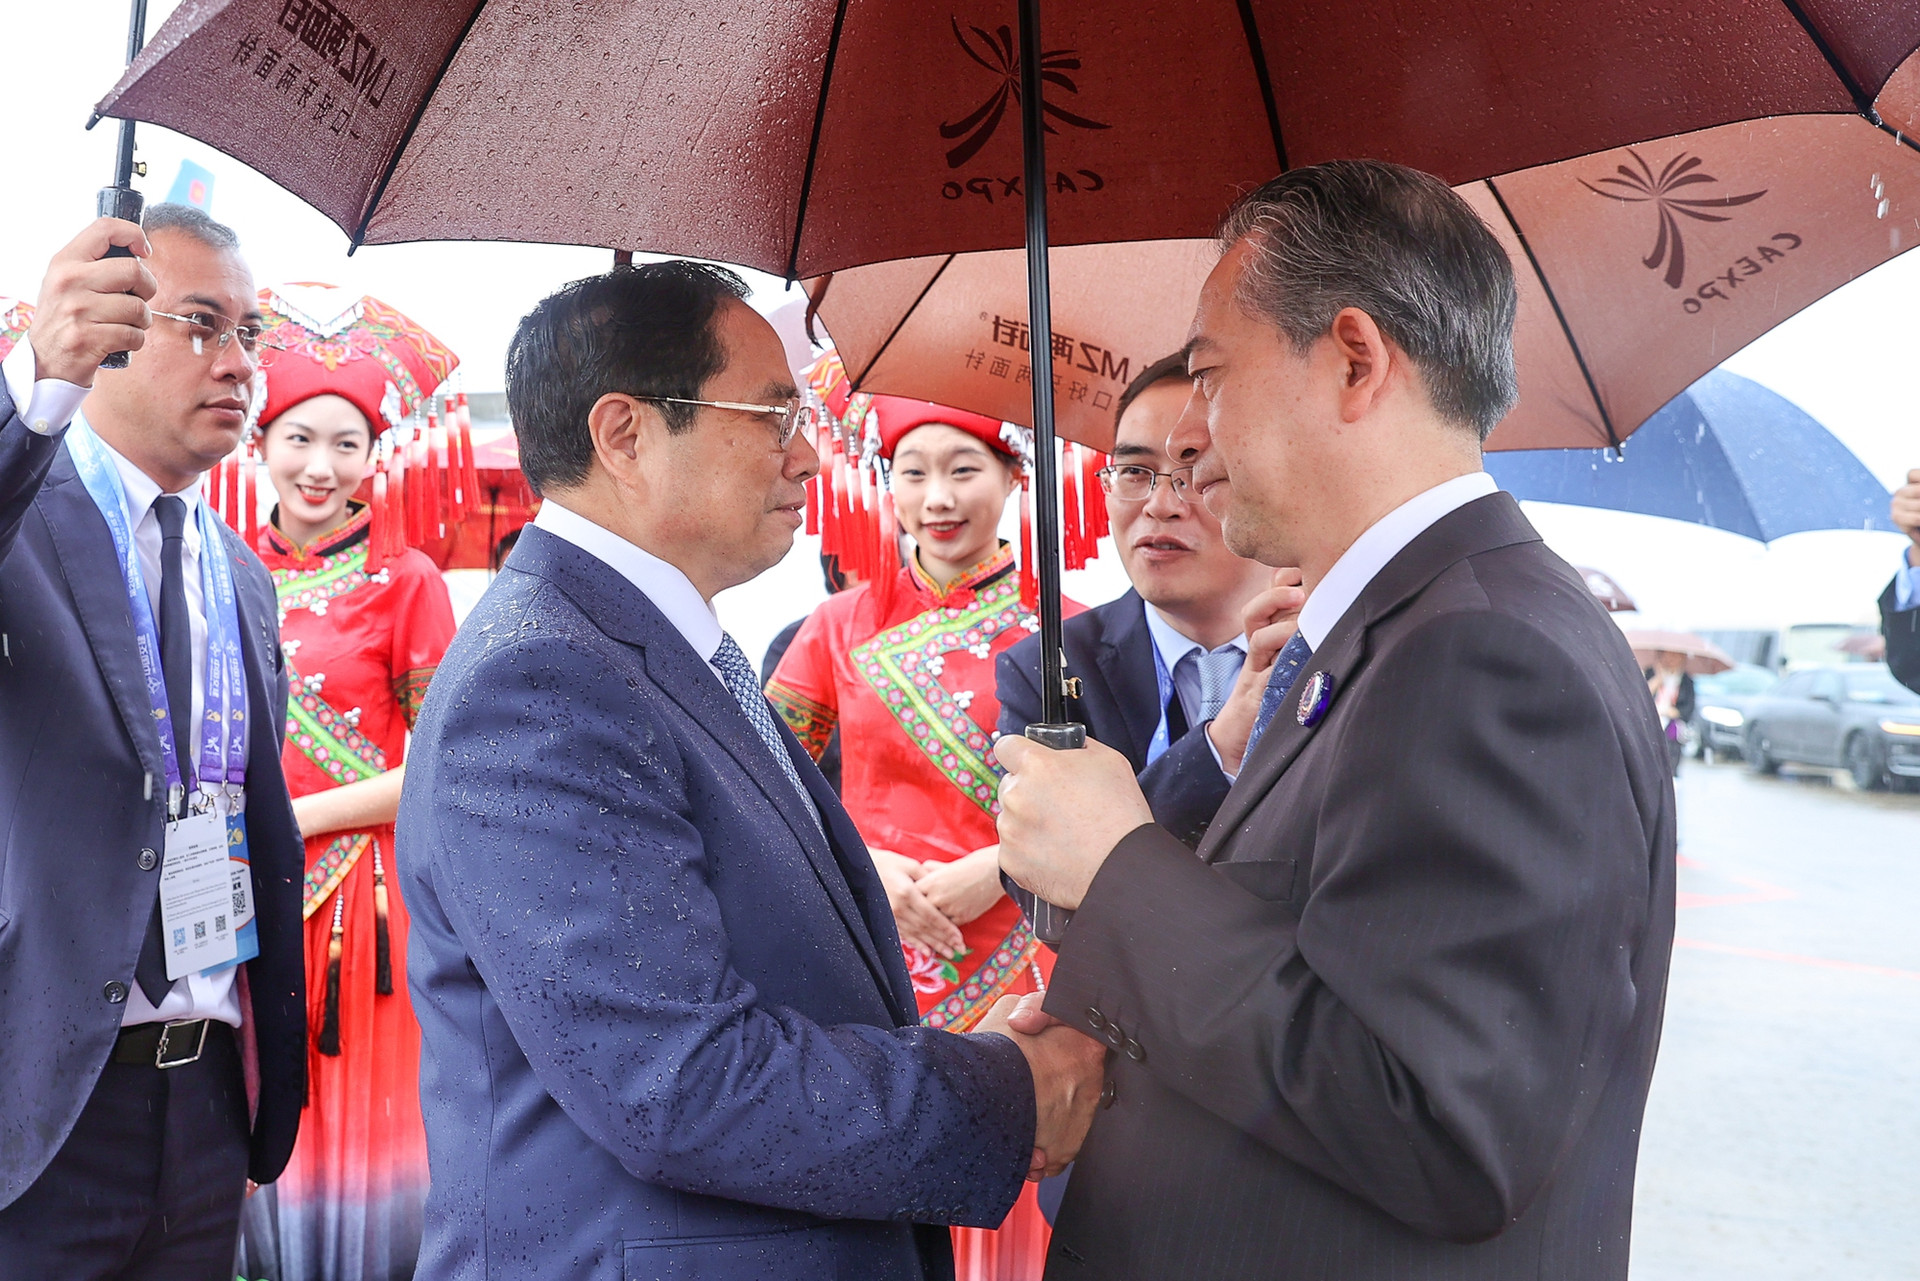 Chùm ảnh: Thủ tướng Phạm Minh Chính bắt đầu chuyến công tác tại Trung Quốc - Ảnh 2.